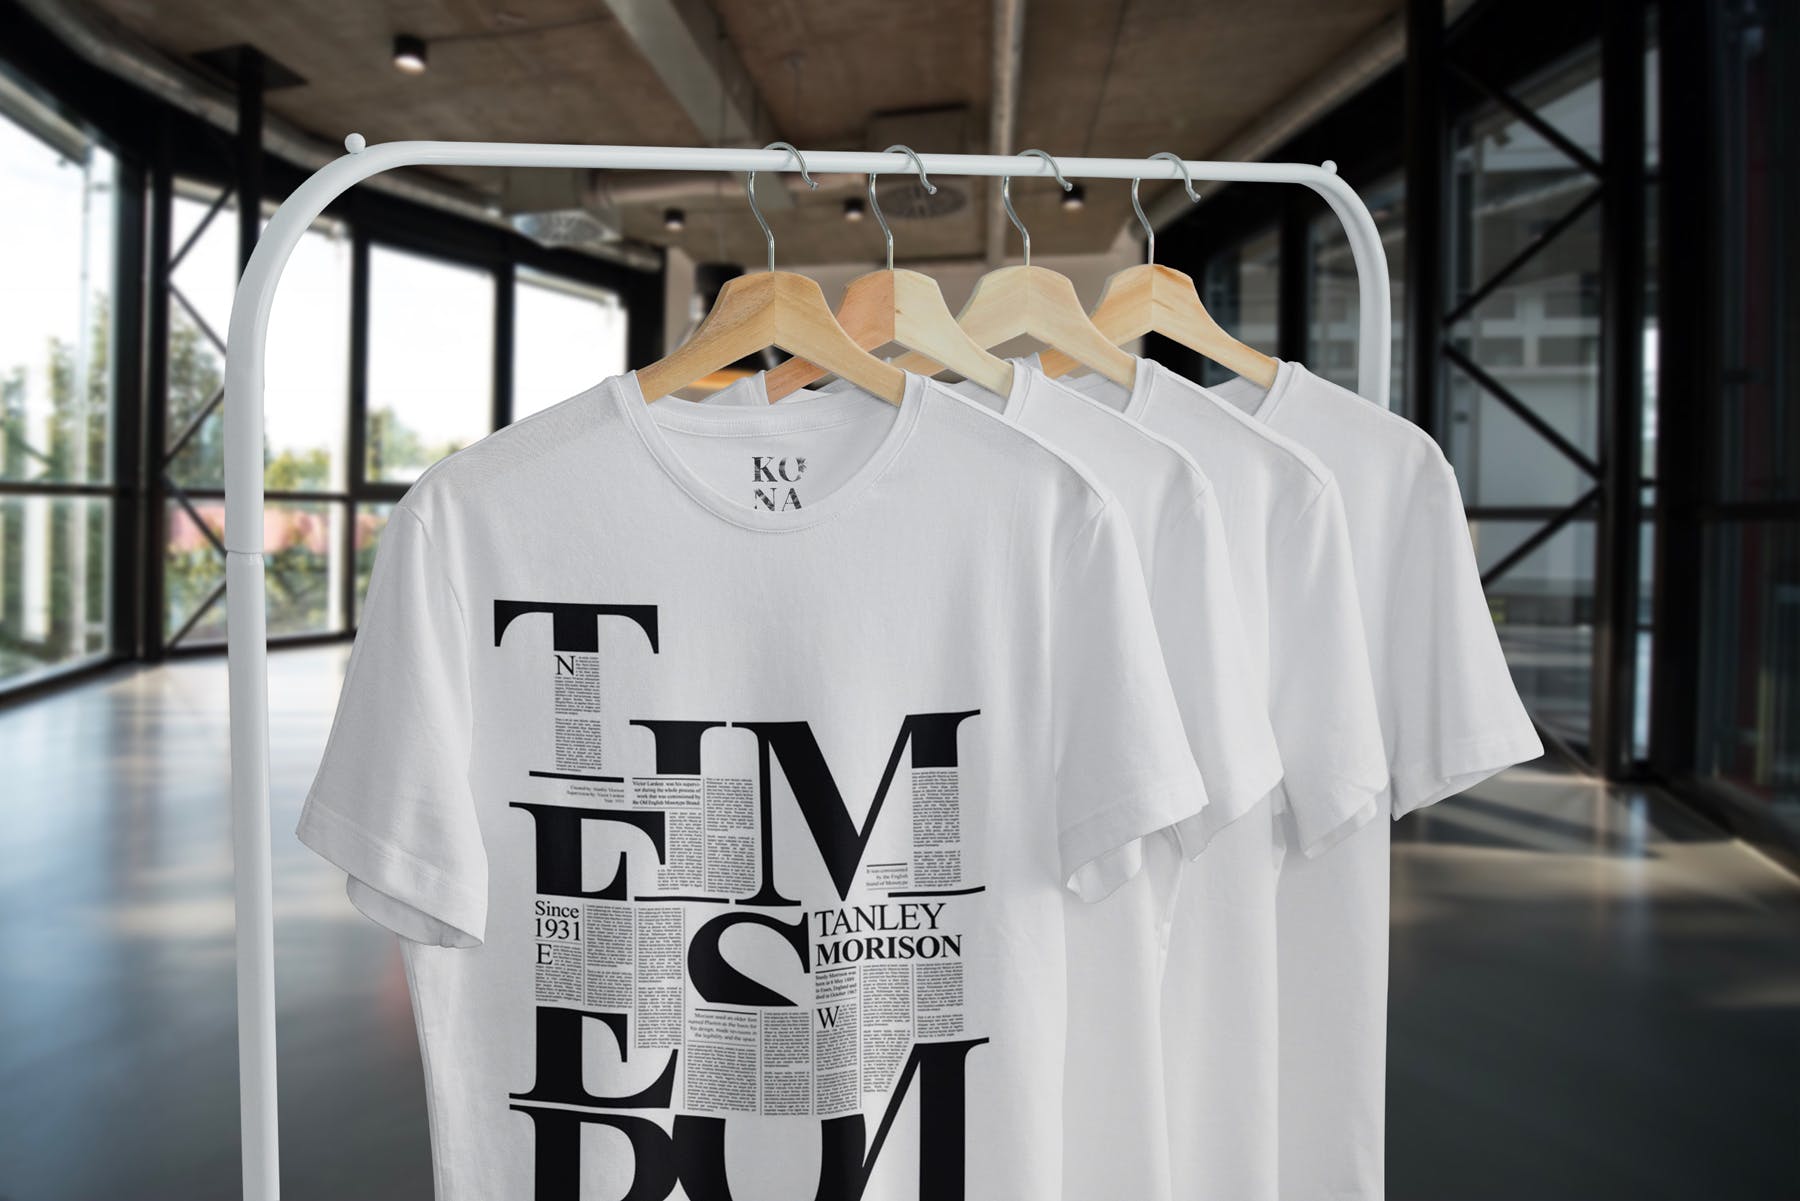 简易晾衣架T恤设计效果图样机第一素材精选 T-Shirt Mock-Up on Hanger插图(3)